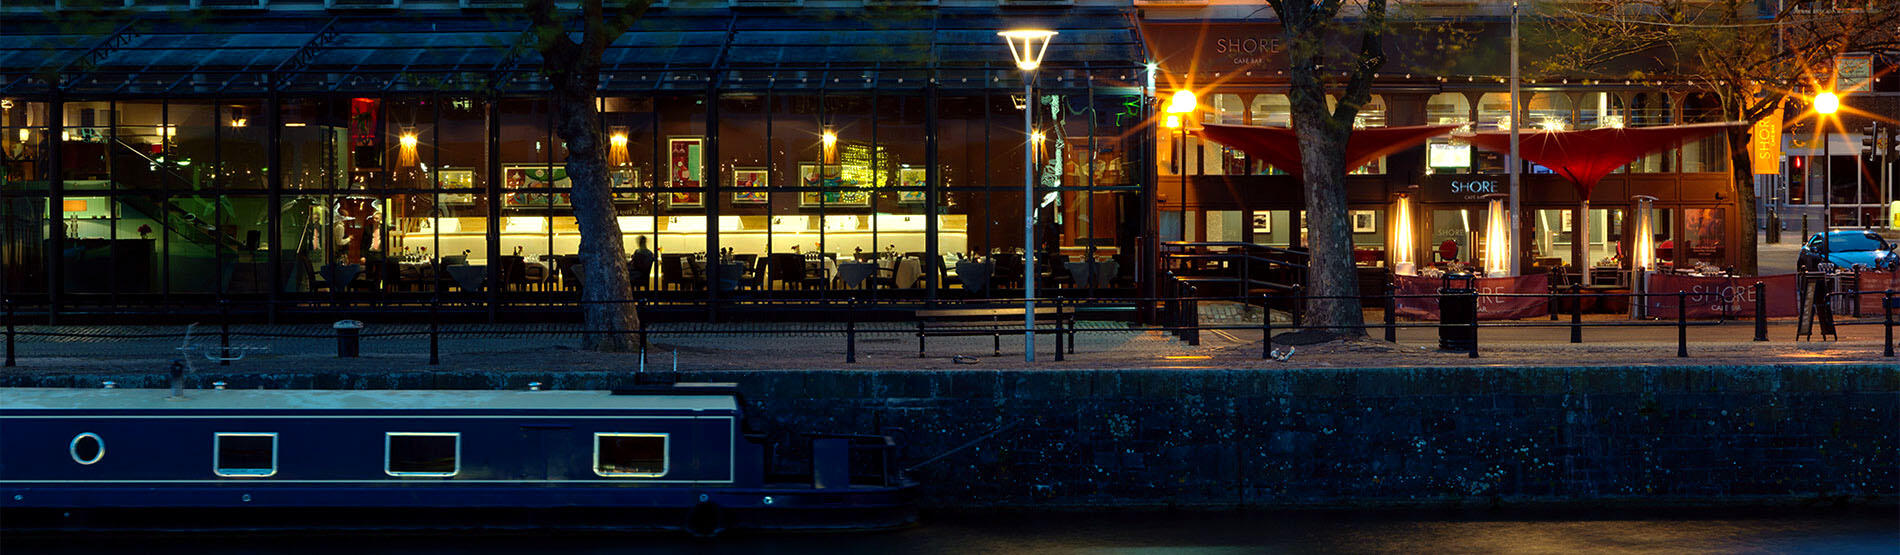 Restaurant & Bar in Bristol's Harbourside | The Bristol Hotel